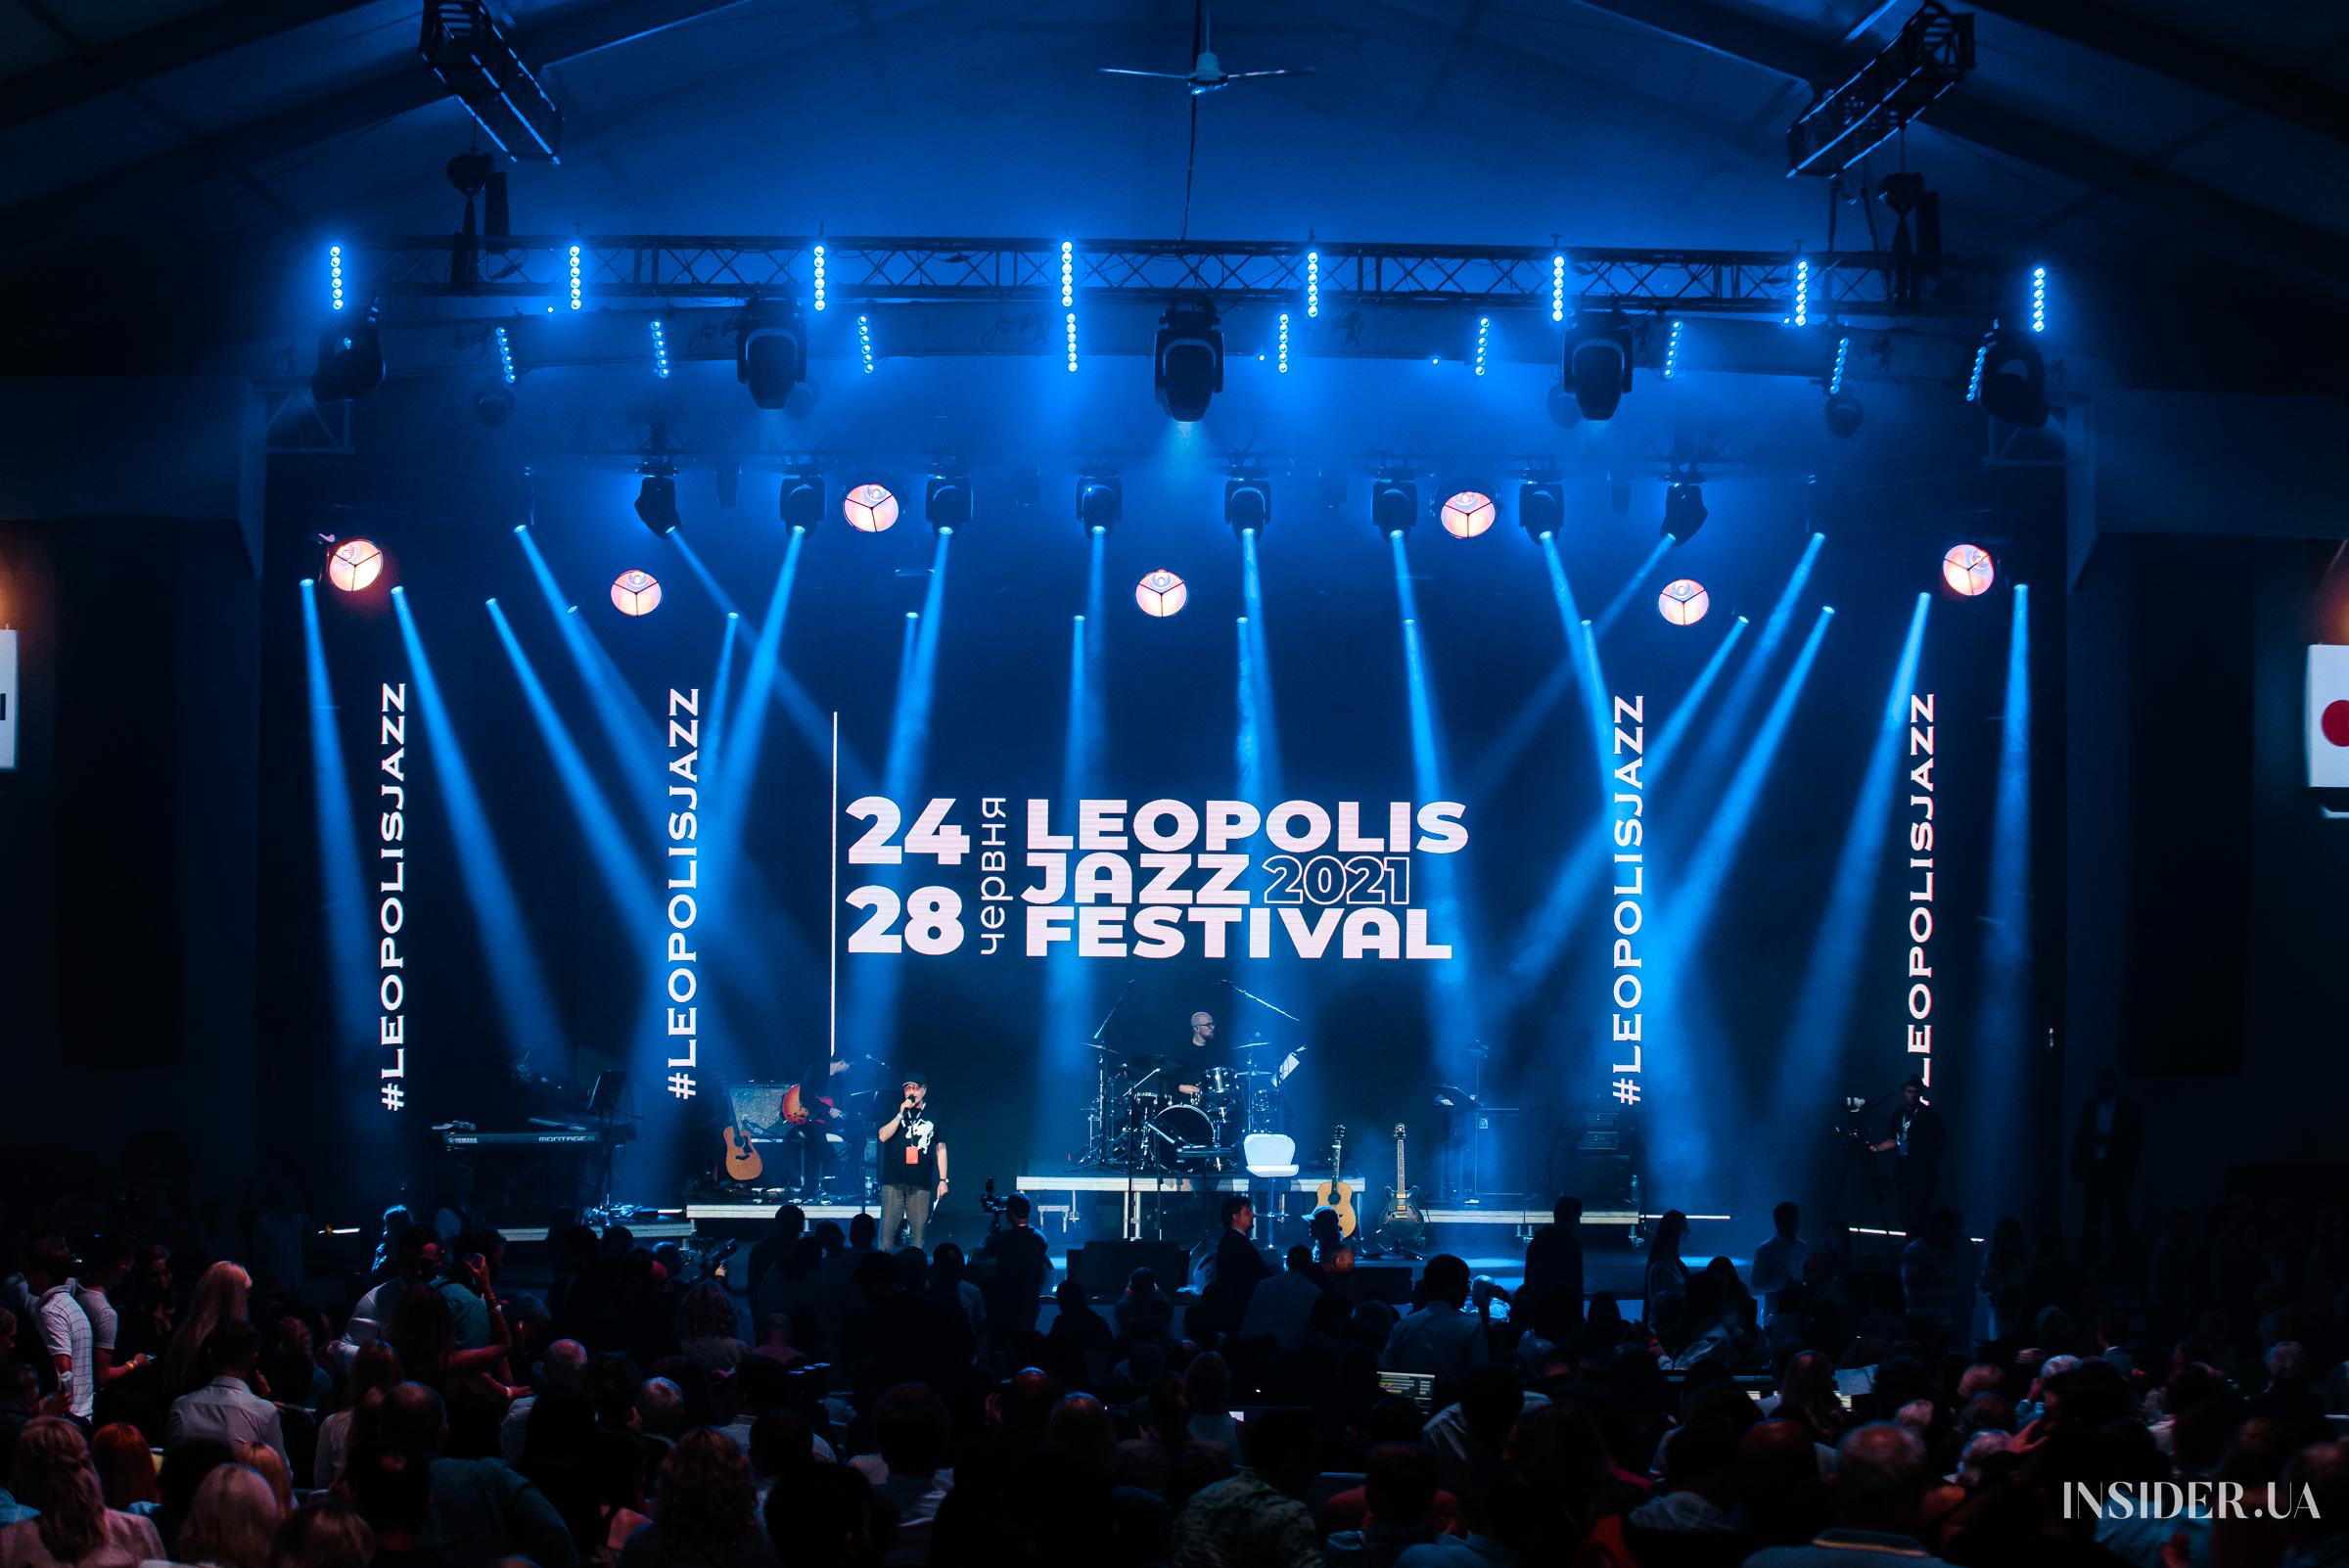 Зіркові гості та неперевершений SEAL: як пройшов другий день фестивалю Leopolis Jazz Fest 2021